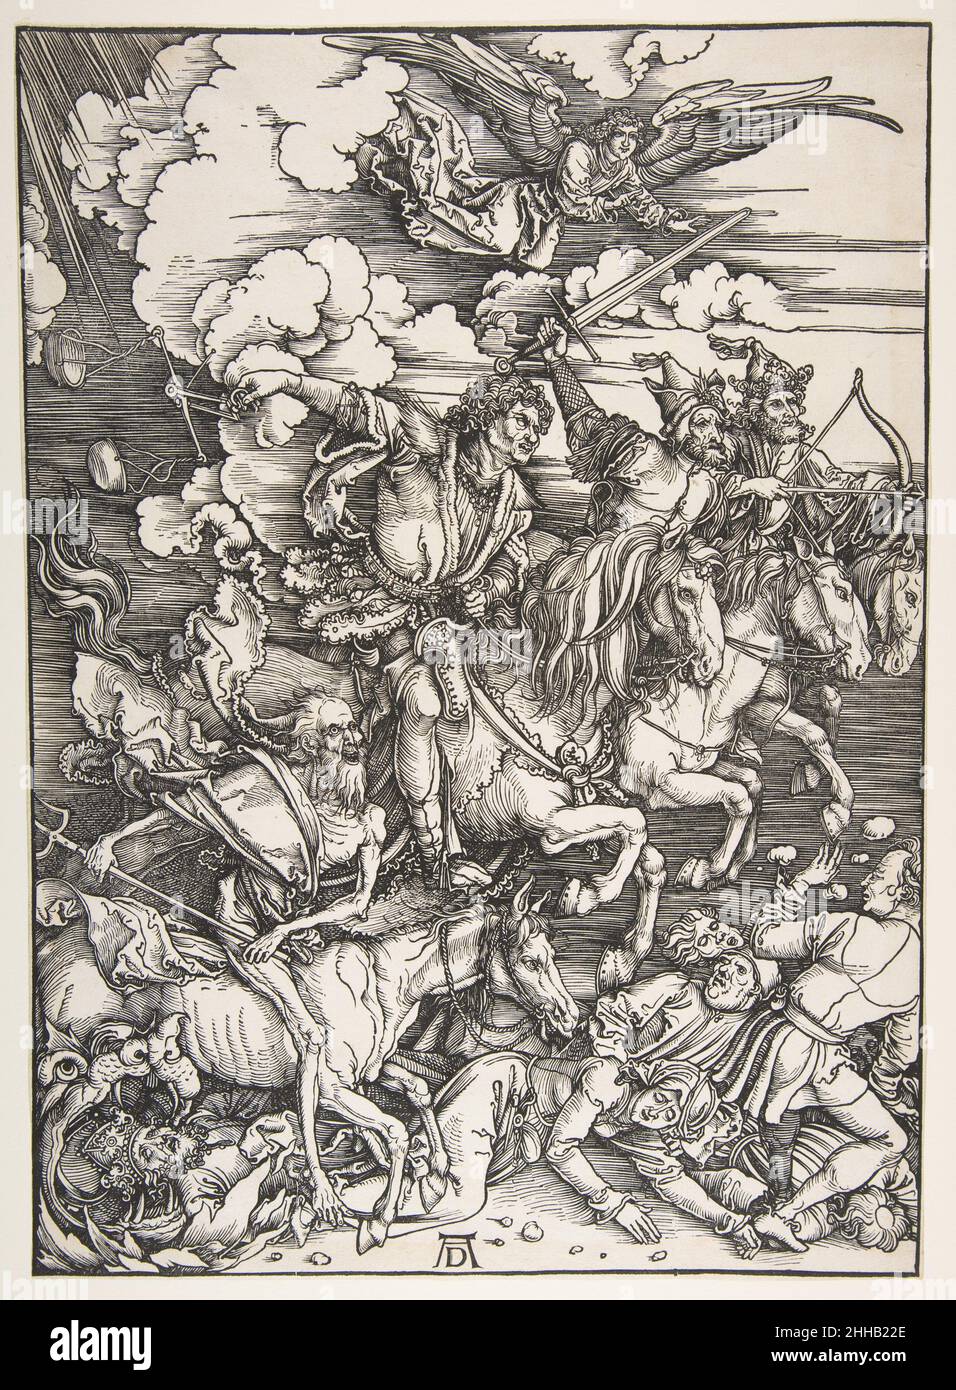 Die vier Reiter, aus der Apokalypse 1498 Albrecht Dürer Deutsch der dritte und bekannteste Holzschnitt aus Dürers Bilderserie zur Apokalypse, die vier Reiter, präsentiert eine dramatisch destillierte Version der Passage aus dem Buch der Offenbarung (6:1-8): Und ich sah, und siehe, ein weißes Pferd, und sein Reiter hatte einen Bogen; und ihm wurde eine Krone gegeben, und er zog aus, siegend und zu siegen. Als er das zweite Siegel öffnete, hörte ich das zweite Lebewesen sagen: 'Komm!' Und es kam ein anderes Pferd heraus, leuchtend rot; sein Reiter durfte Frieden von der Erde nehmen, damit die Menschen es tun konnten Stockfoto